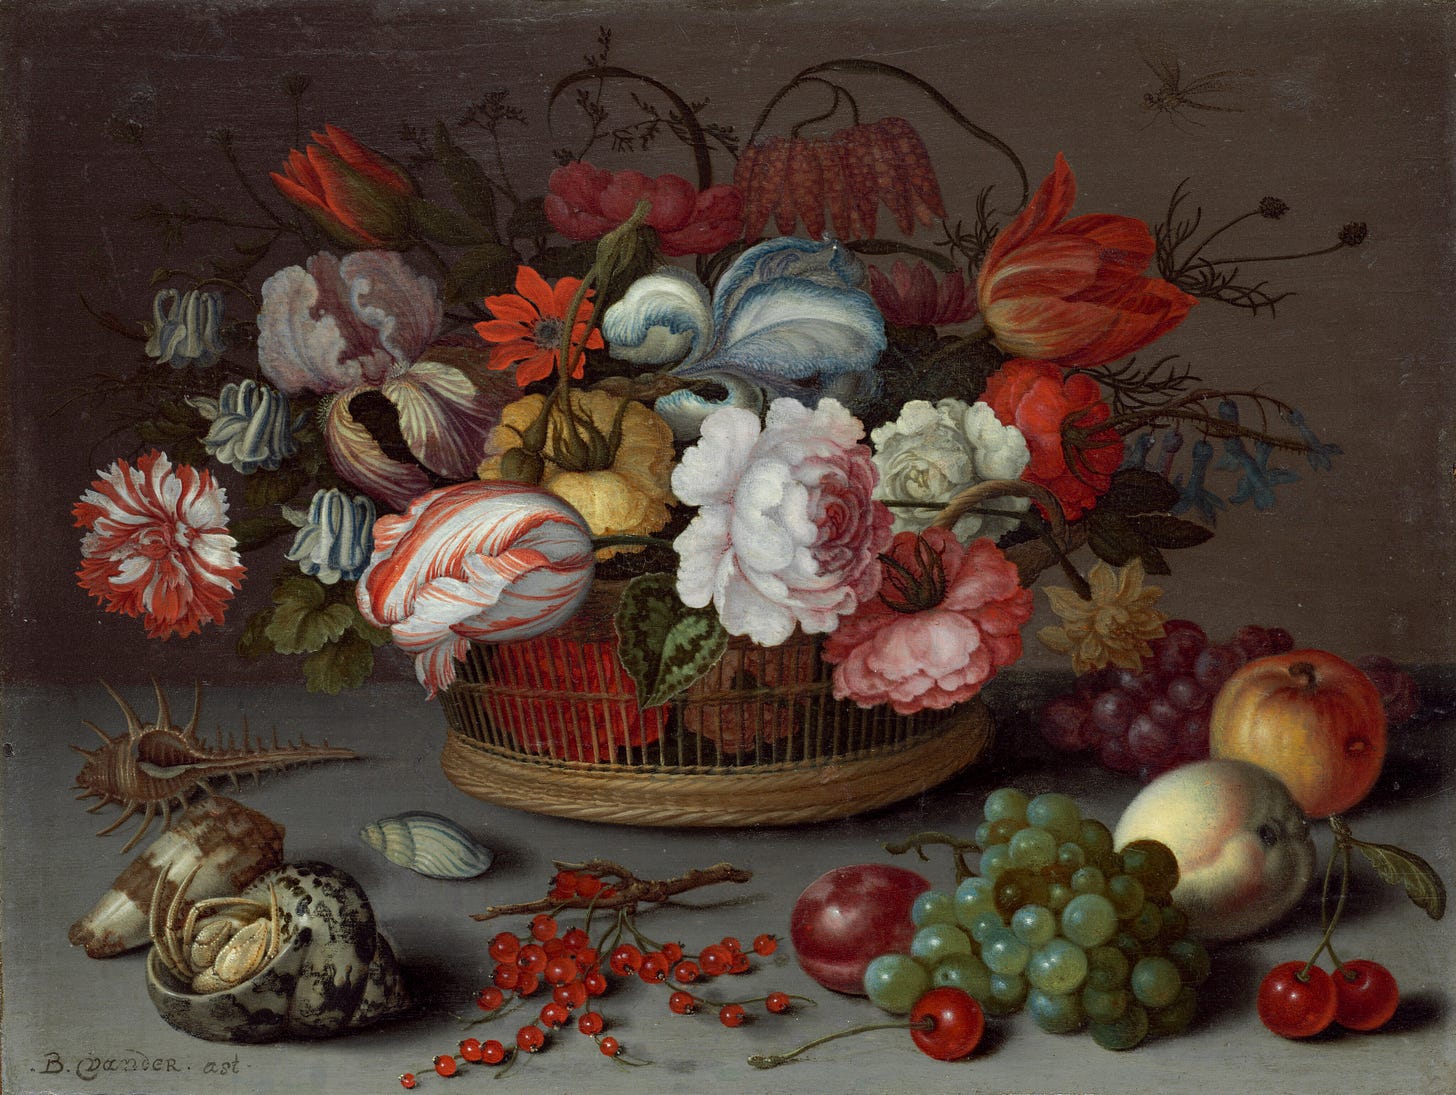 Basket of Flowers, c. 1622 by Balthasar van der Ast